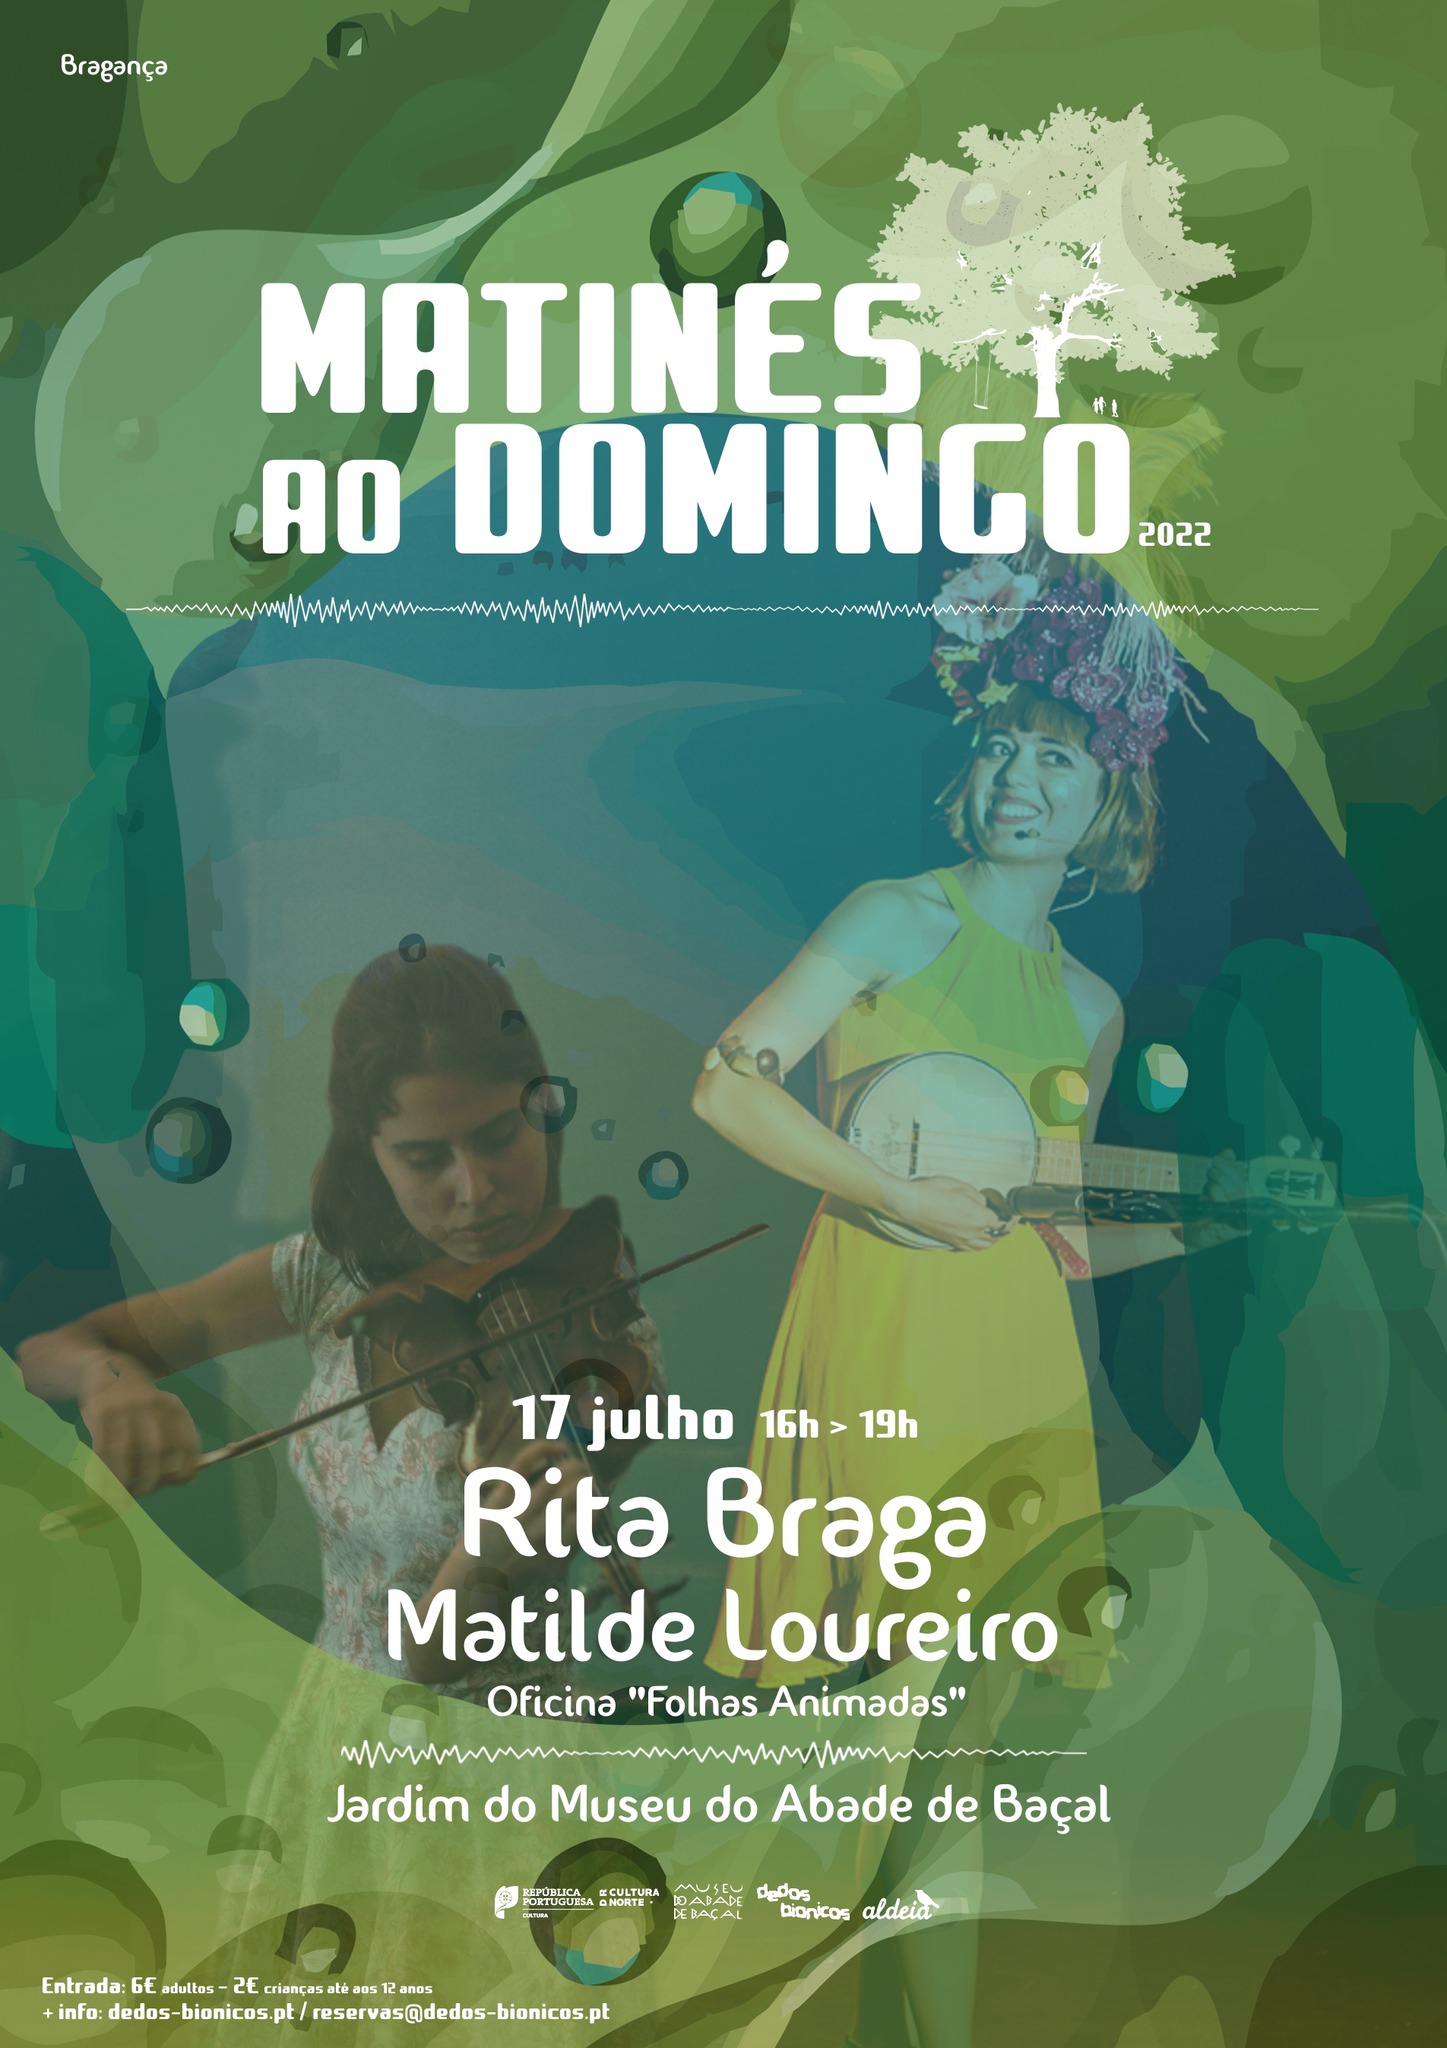 Rita Braga + Matilde Loureiro + Oficina Folhas Animadas